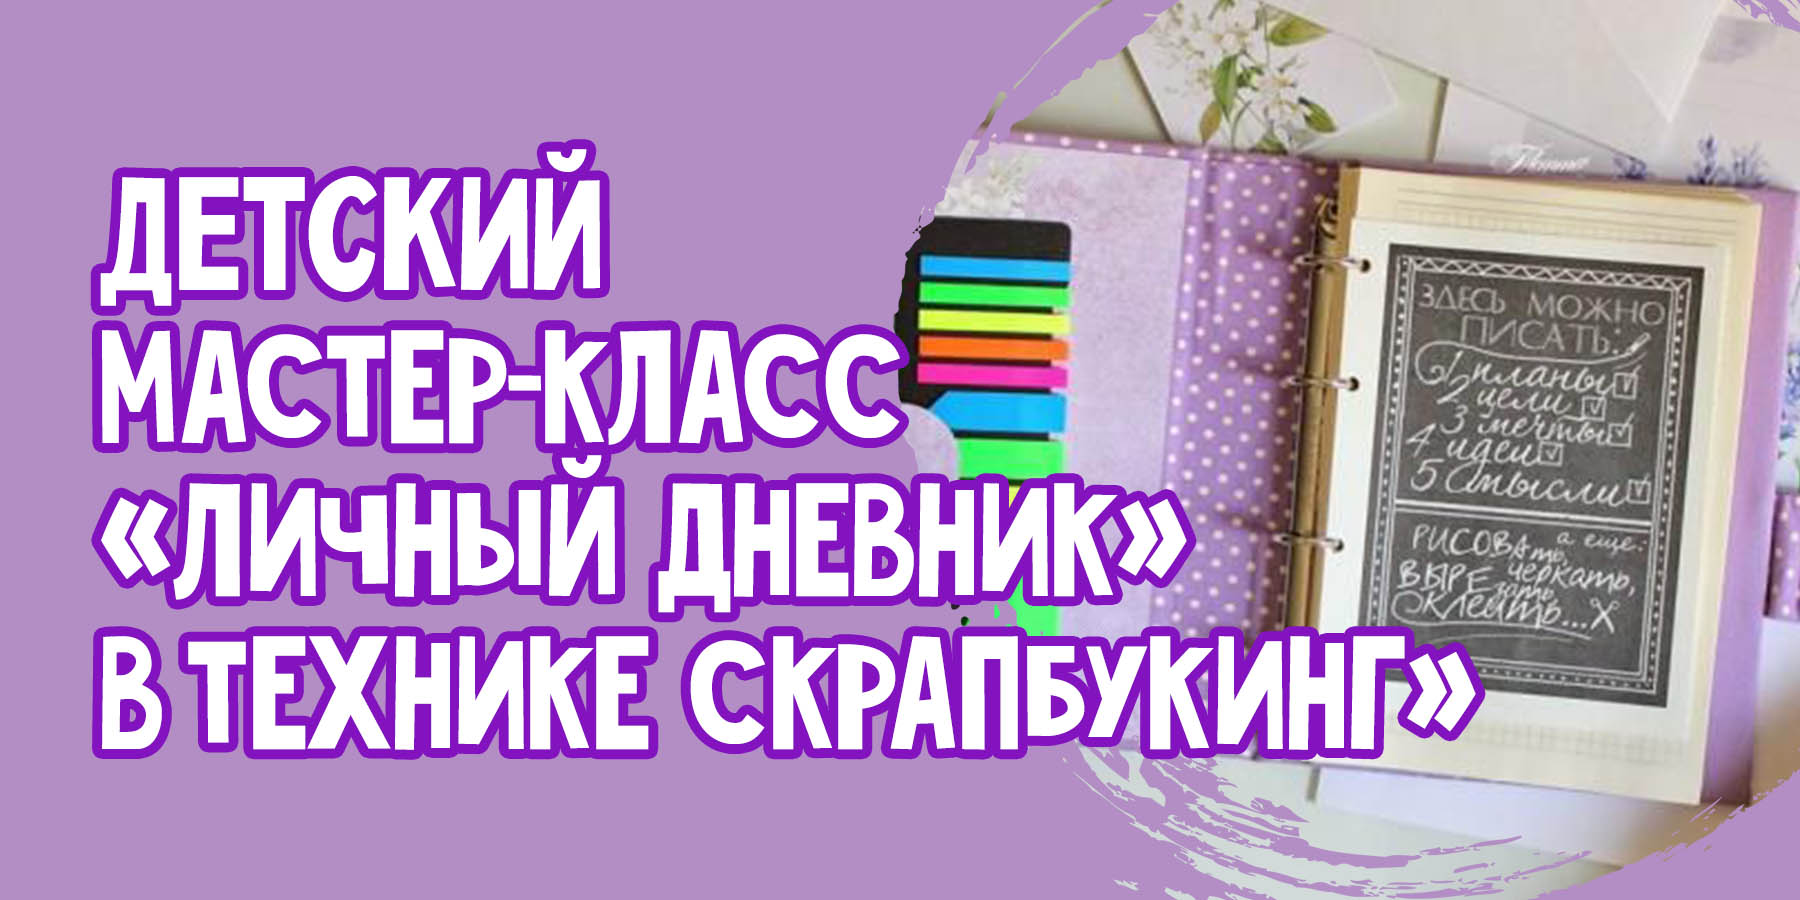 "Личный дневник" в технике скрапбукинг-6 августа